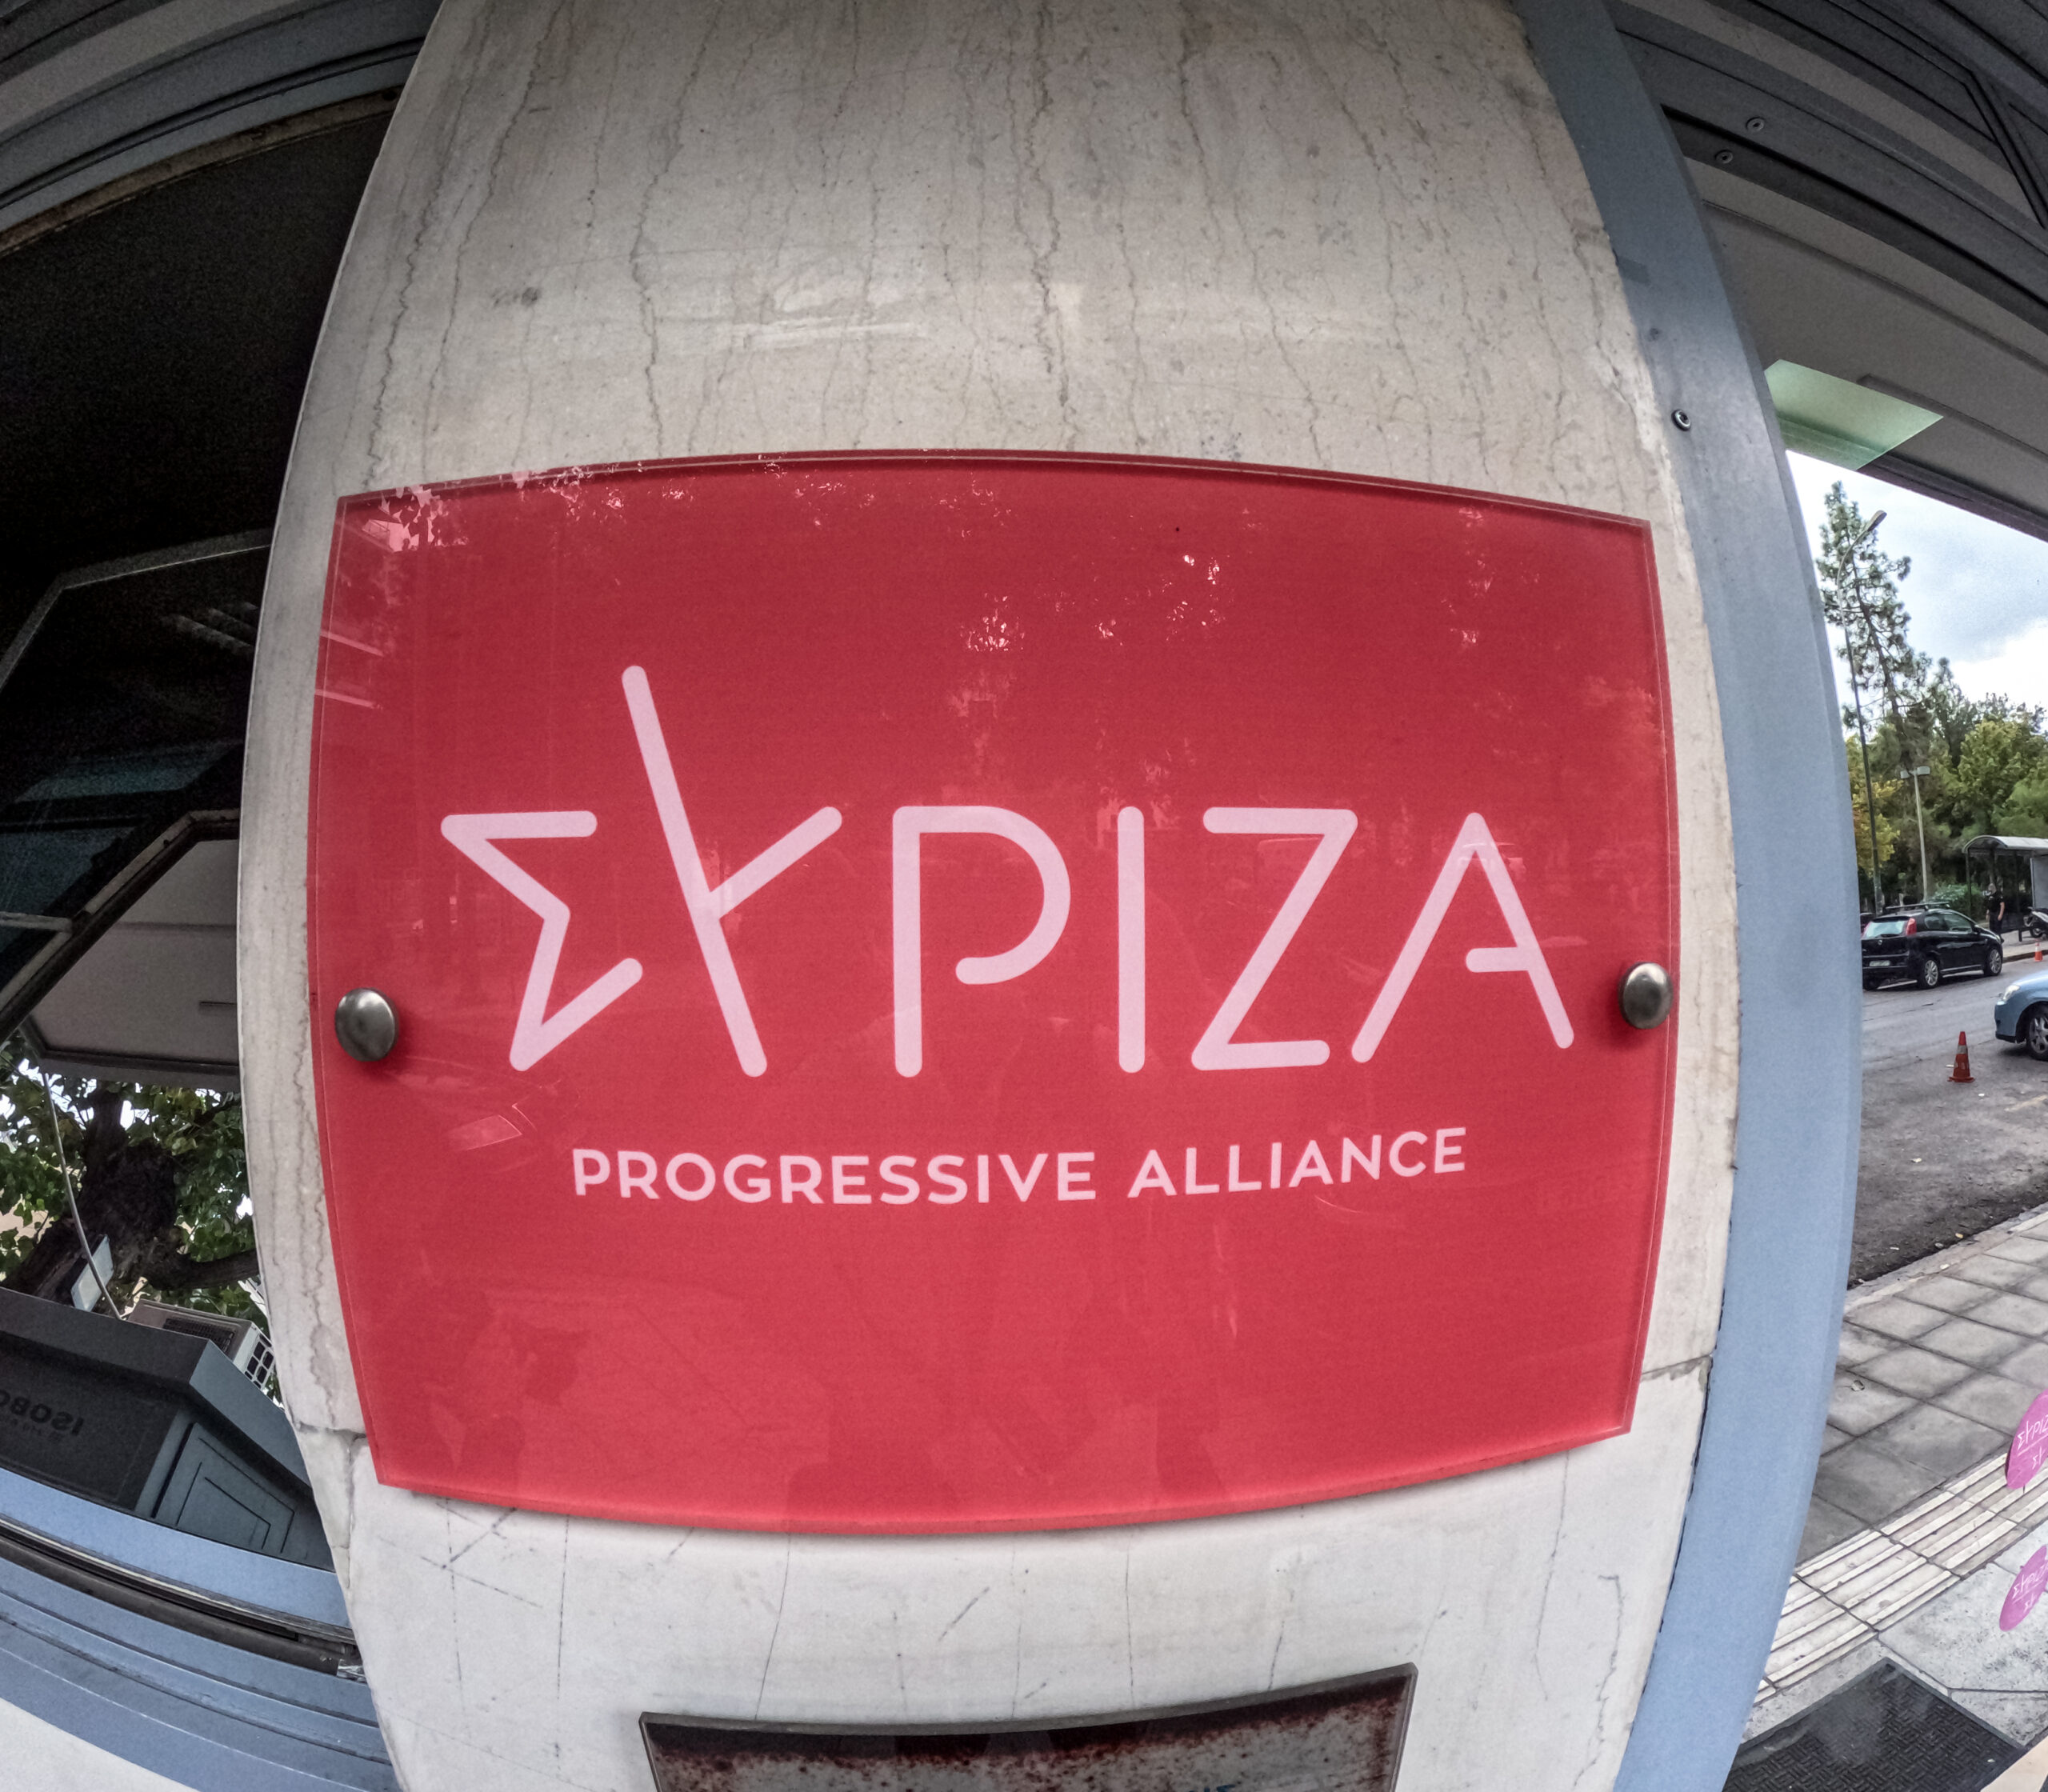 ΣΥΡΙΖΑ: Ποια στελέχη που βρίσκονται κοντά στον Στ. Κασσελάκη δεν στηρίζουν την πρότασή του για δημοψήφισμα